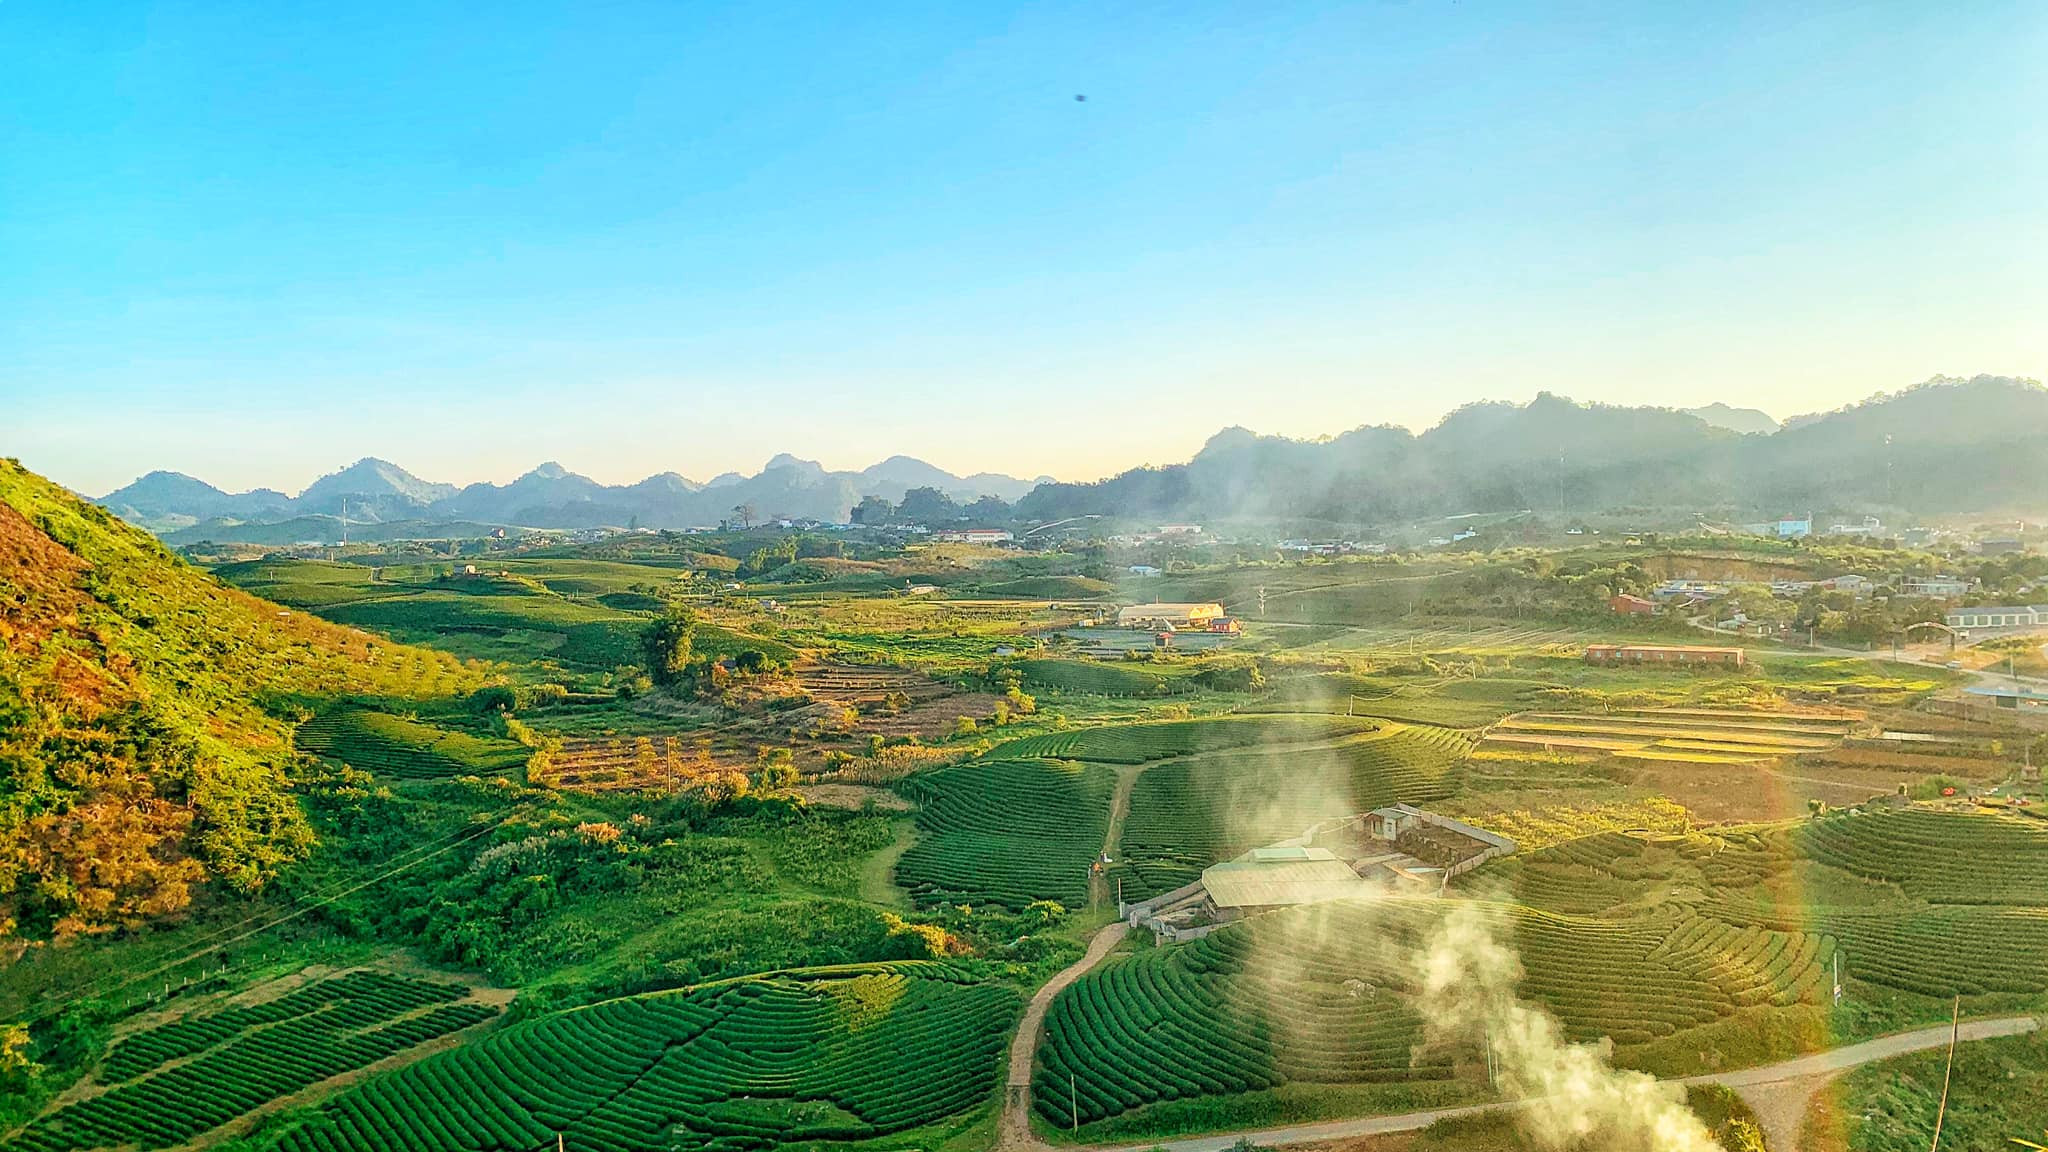 Tour du lịch Mộc Châu Tết Dương Lịch 2 ngày giá tốt khởi hành từ Hà Nội